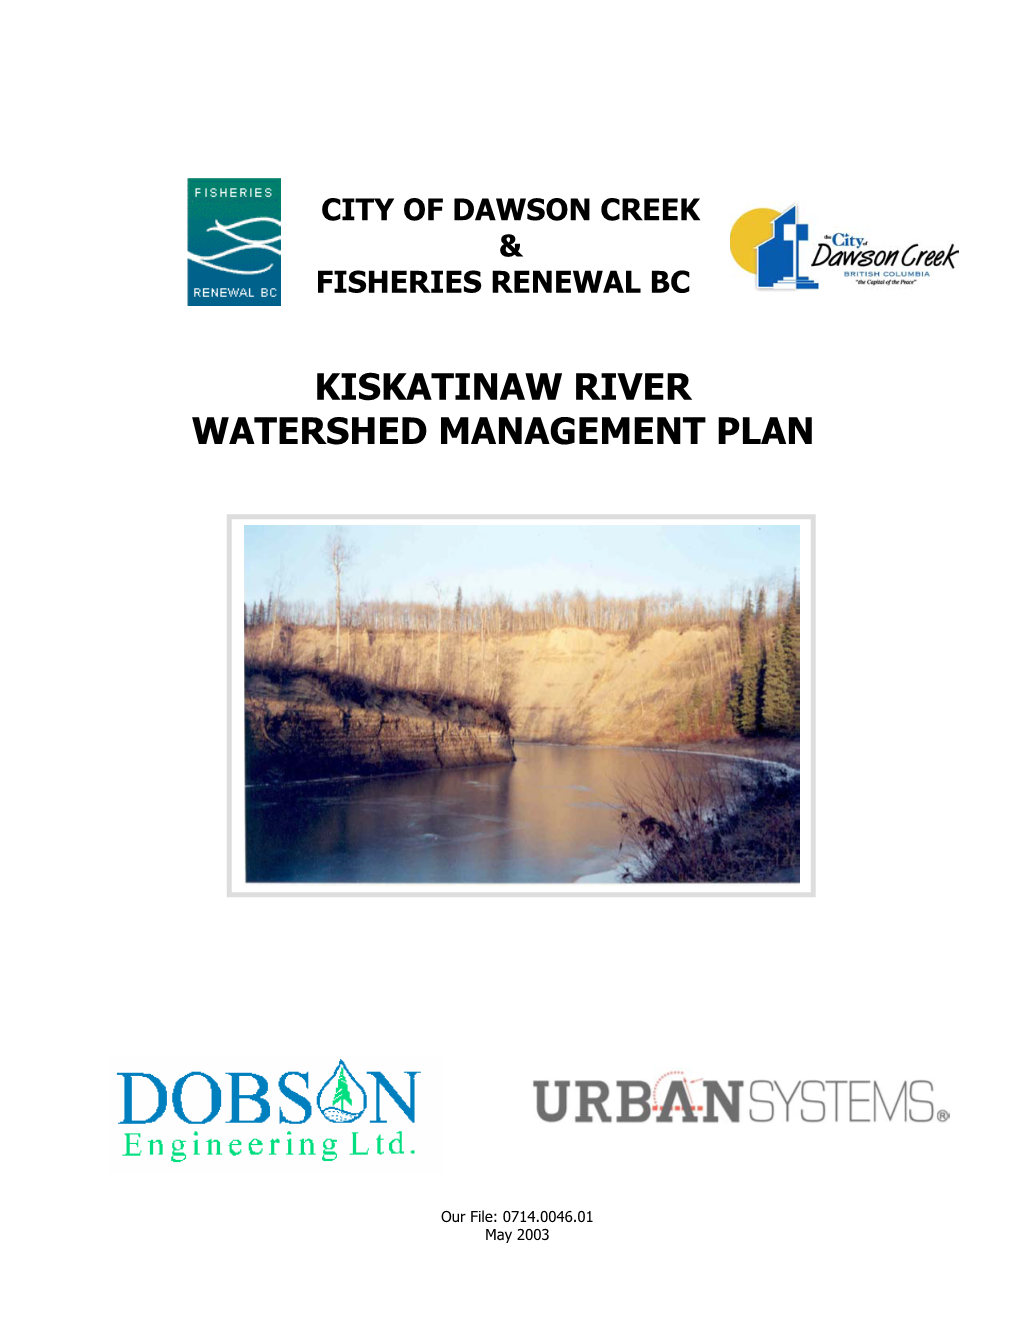 Kiskatinaw River Watershed Management Plan